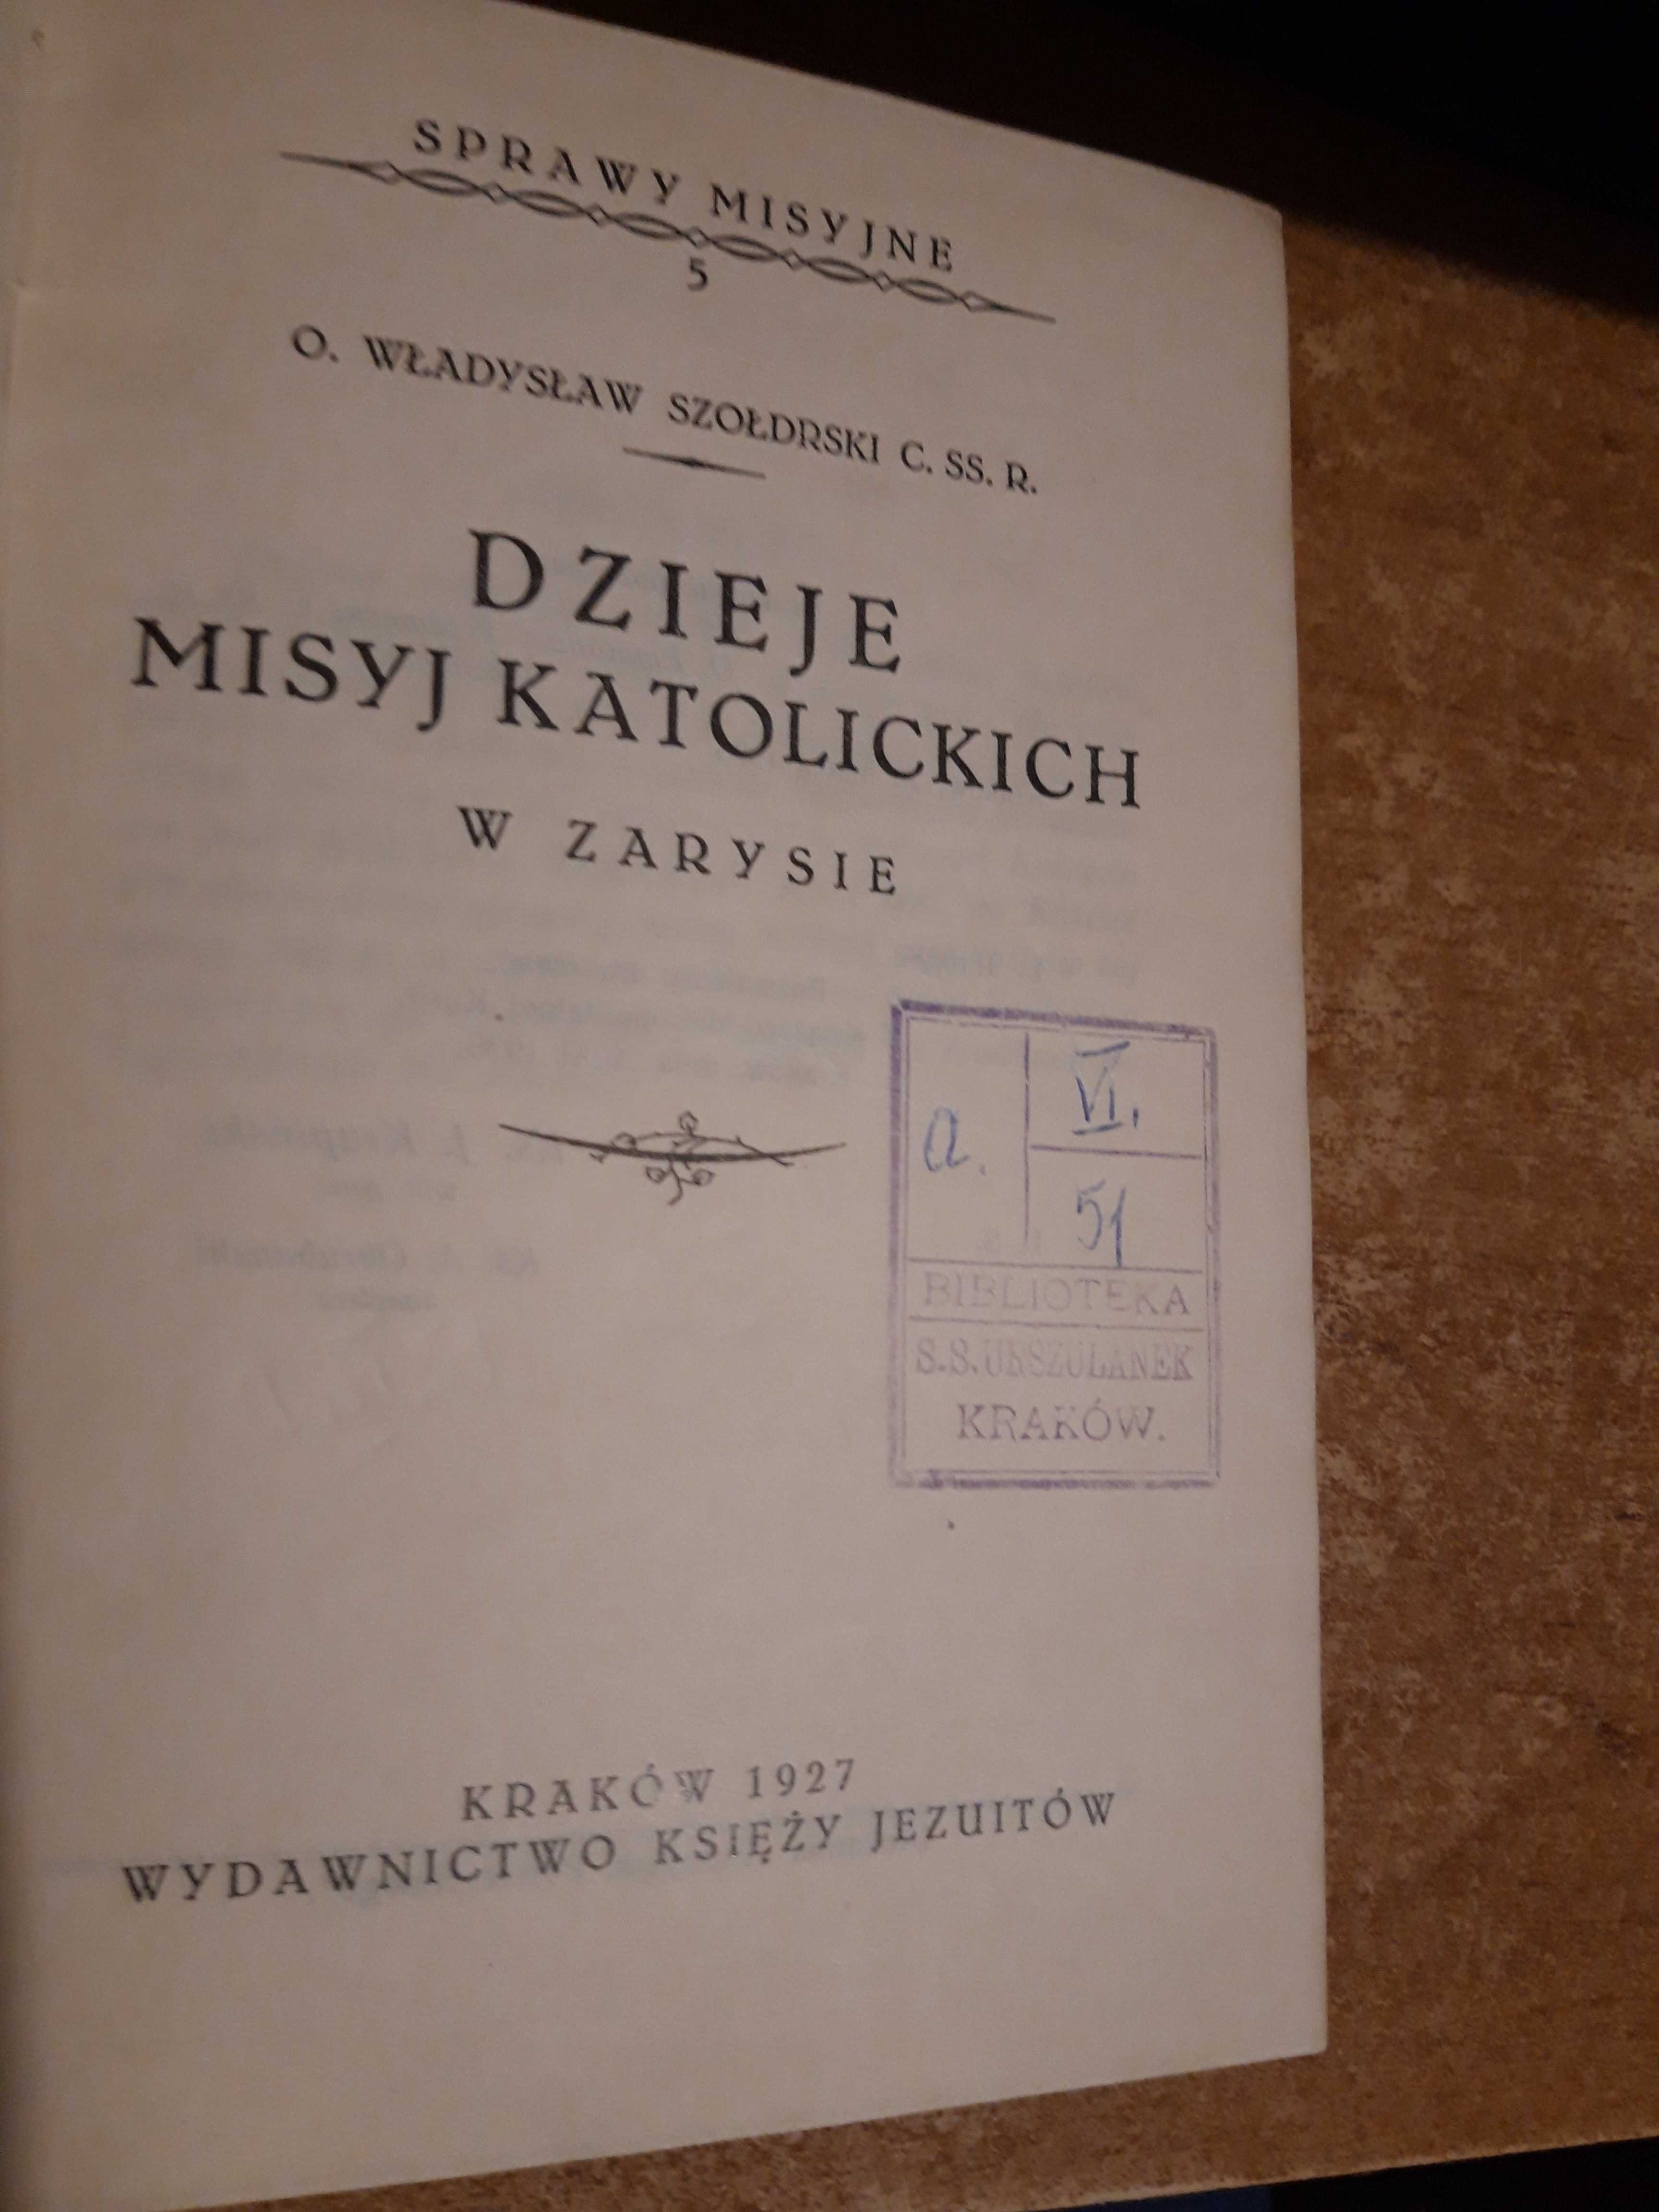 Dzieje Misyj Katolickich -O. Wł. Szołdrski- Kraków1927,opr.